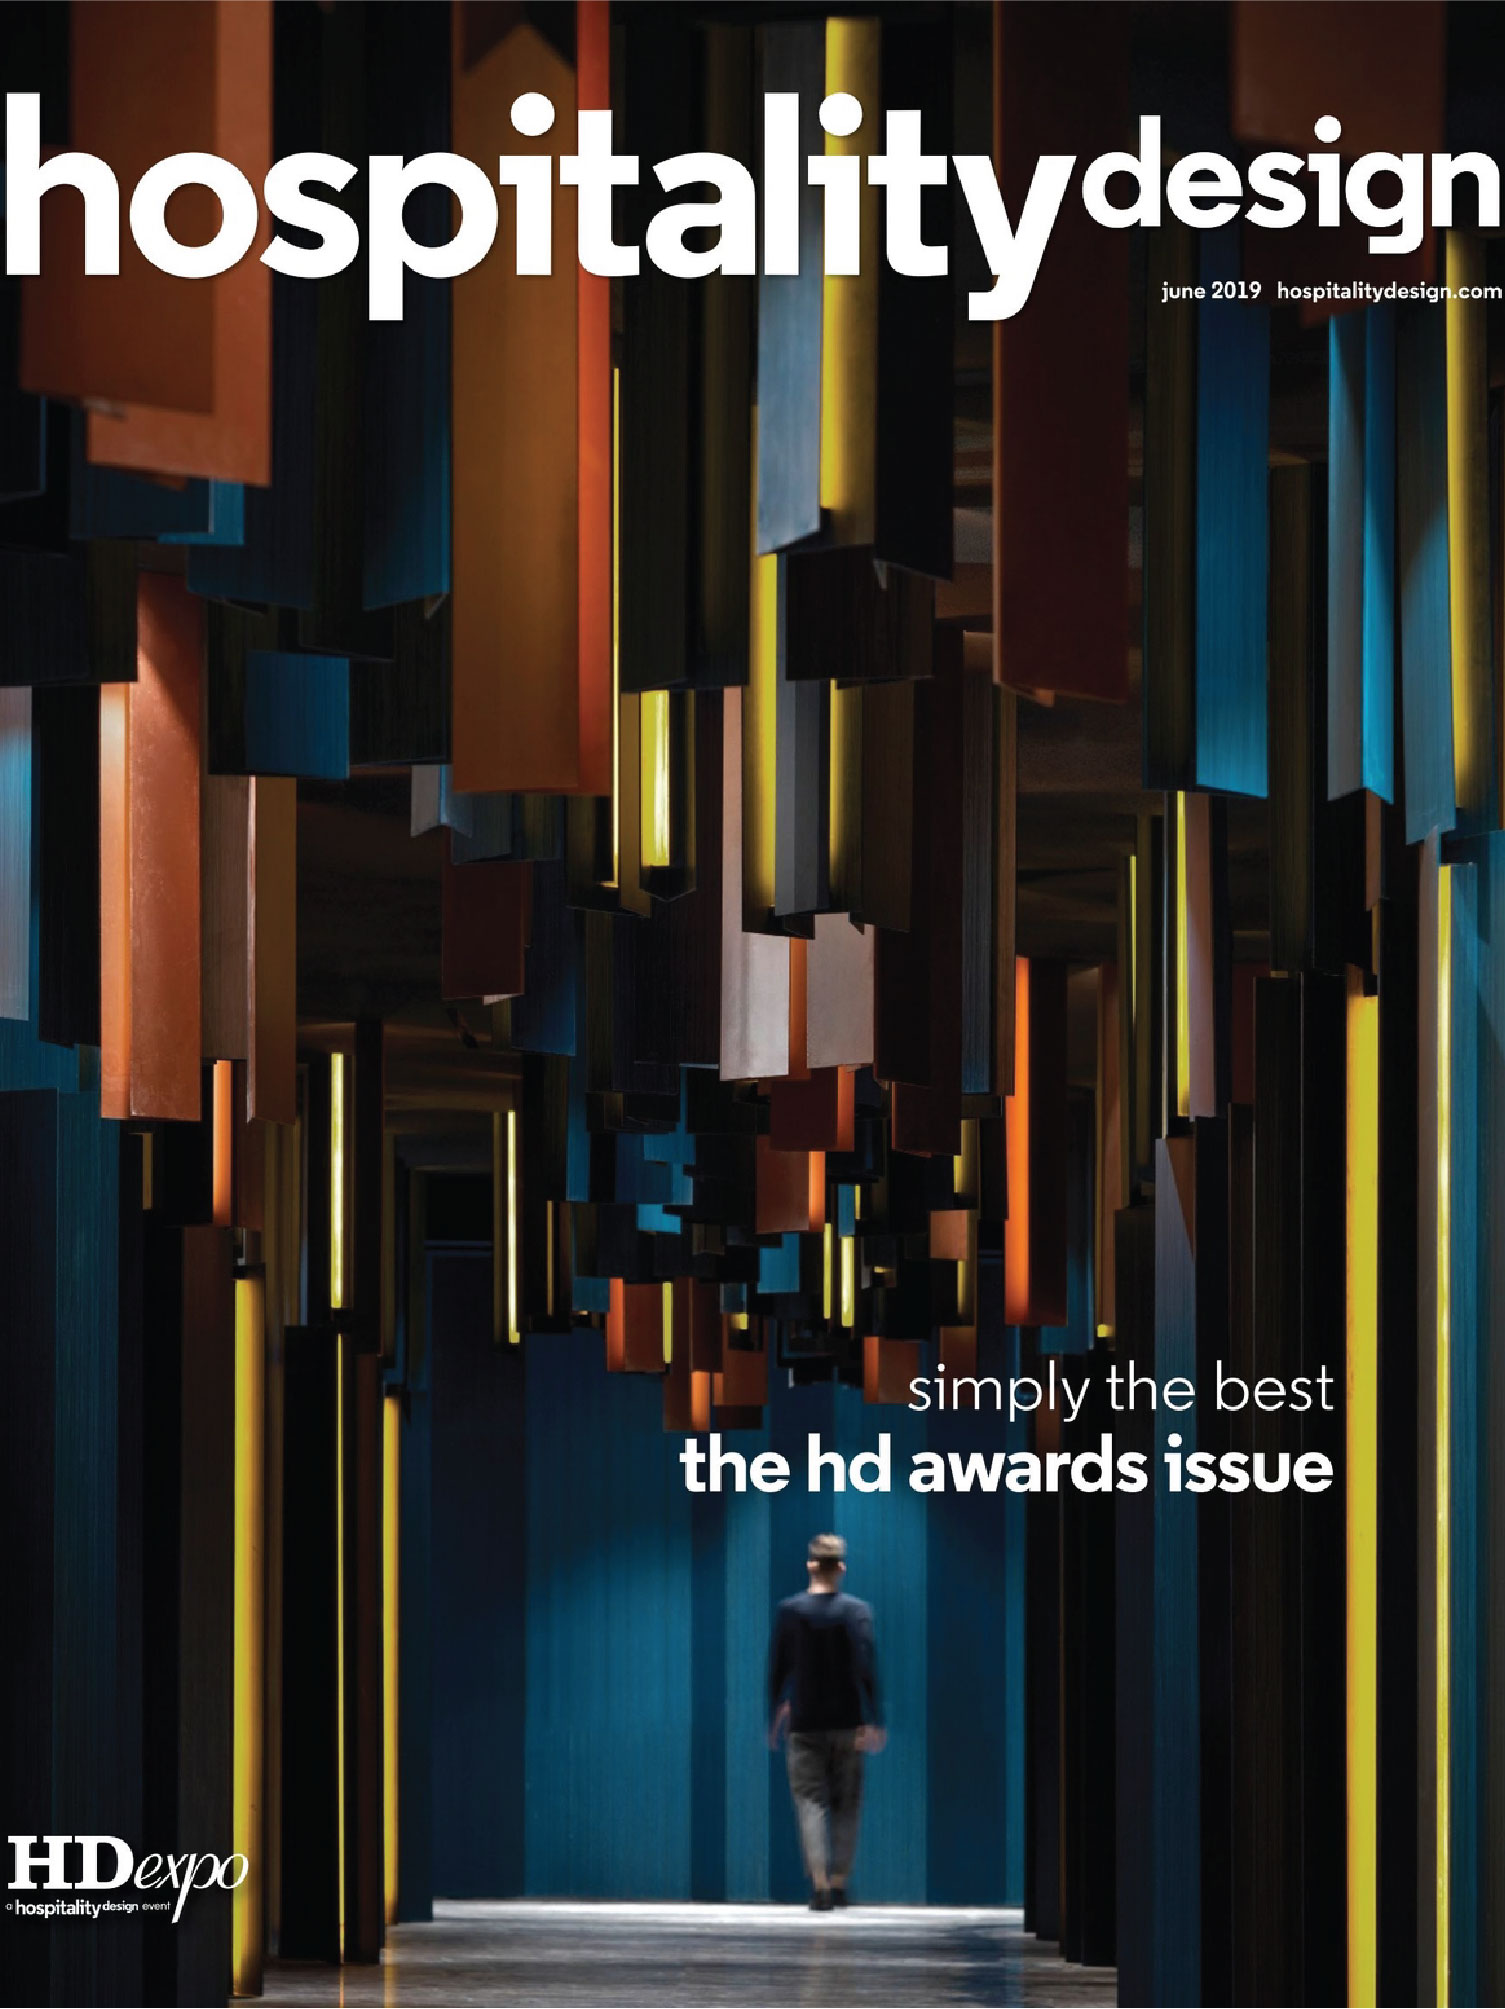 couverture du magazine hospitality design de juin 2019